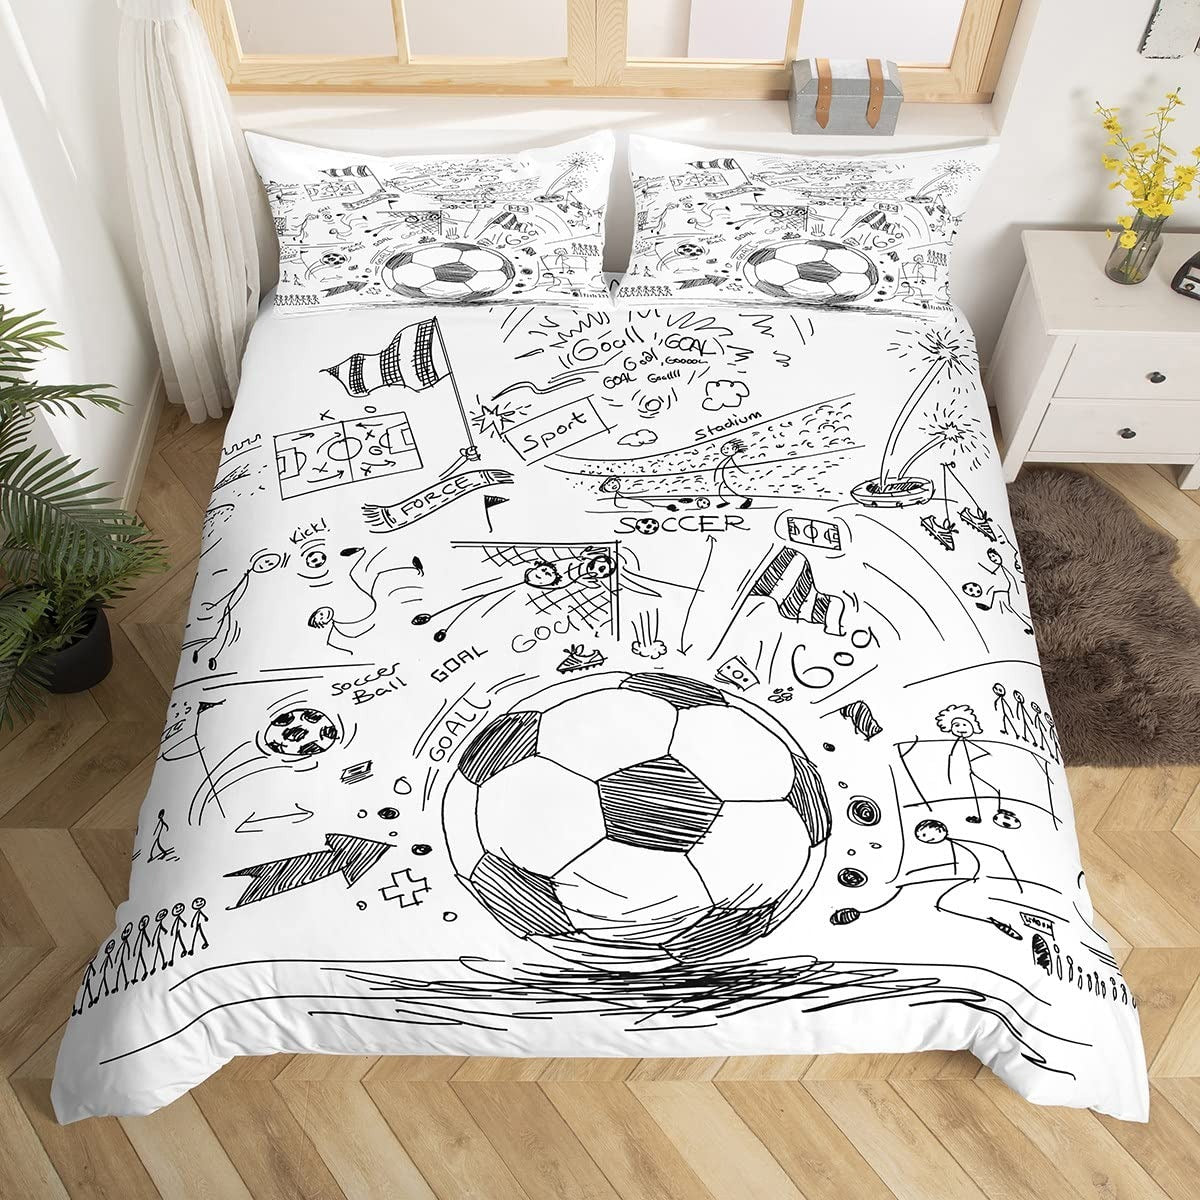 Fußball-Doodles-Bettbezug